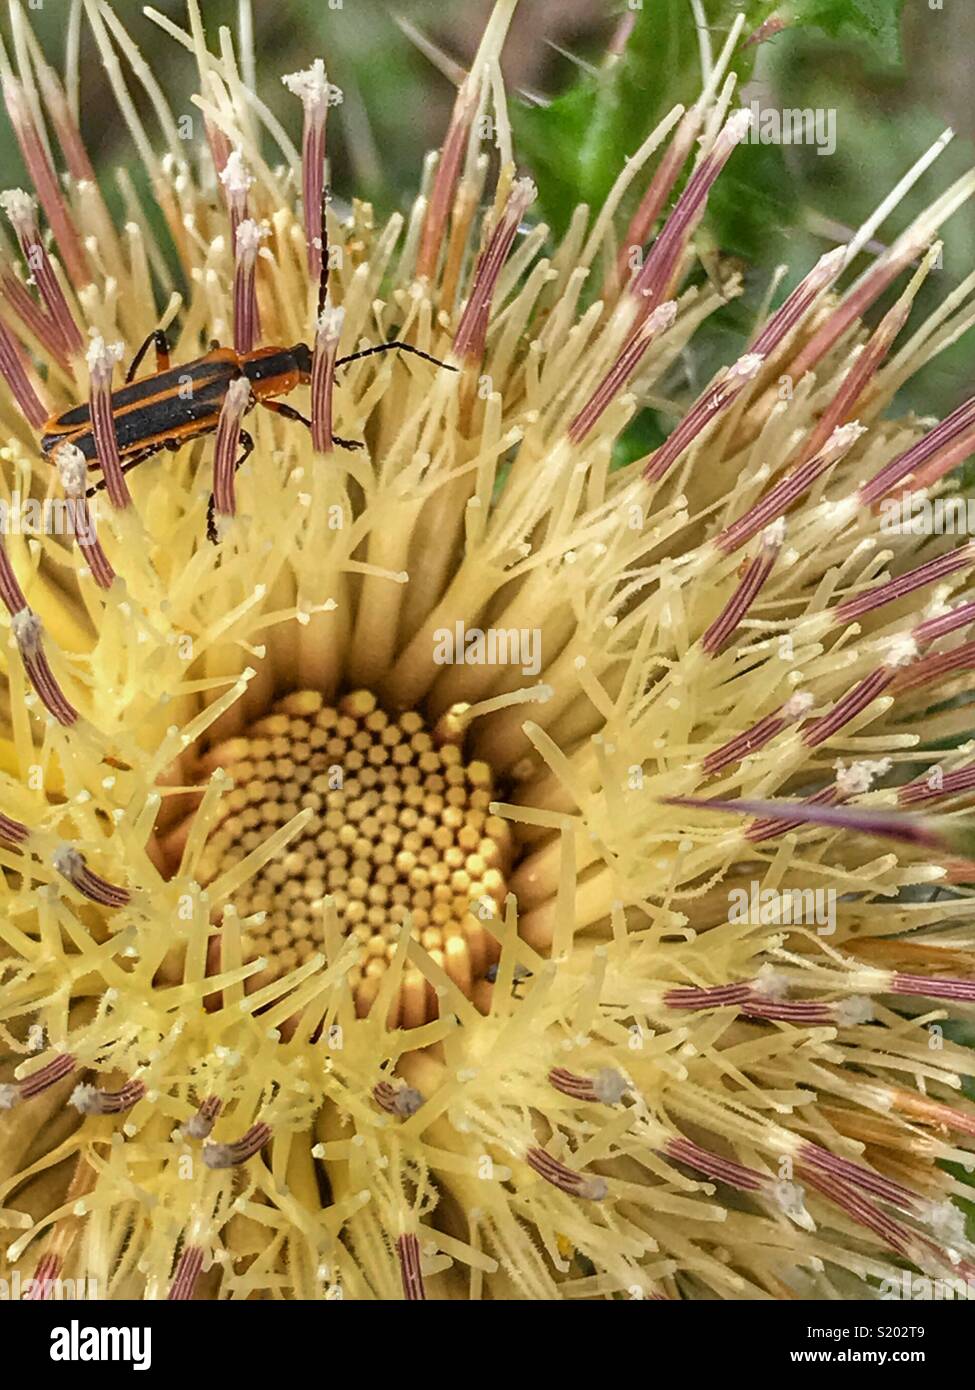 Un soldat beetle (chat) leatherwing sur butiner une fleur jaune chardon-marie (Silybum marianum) Banque D'Images